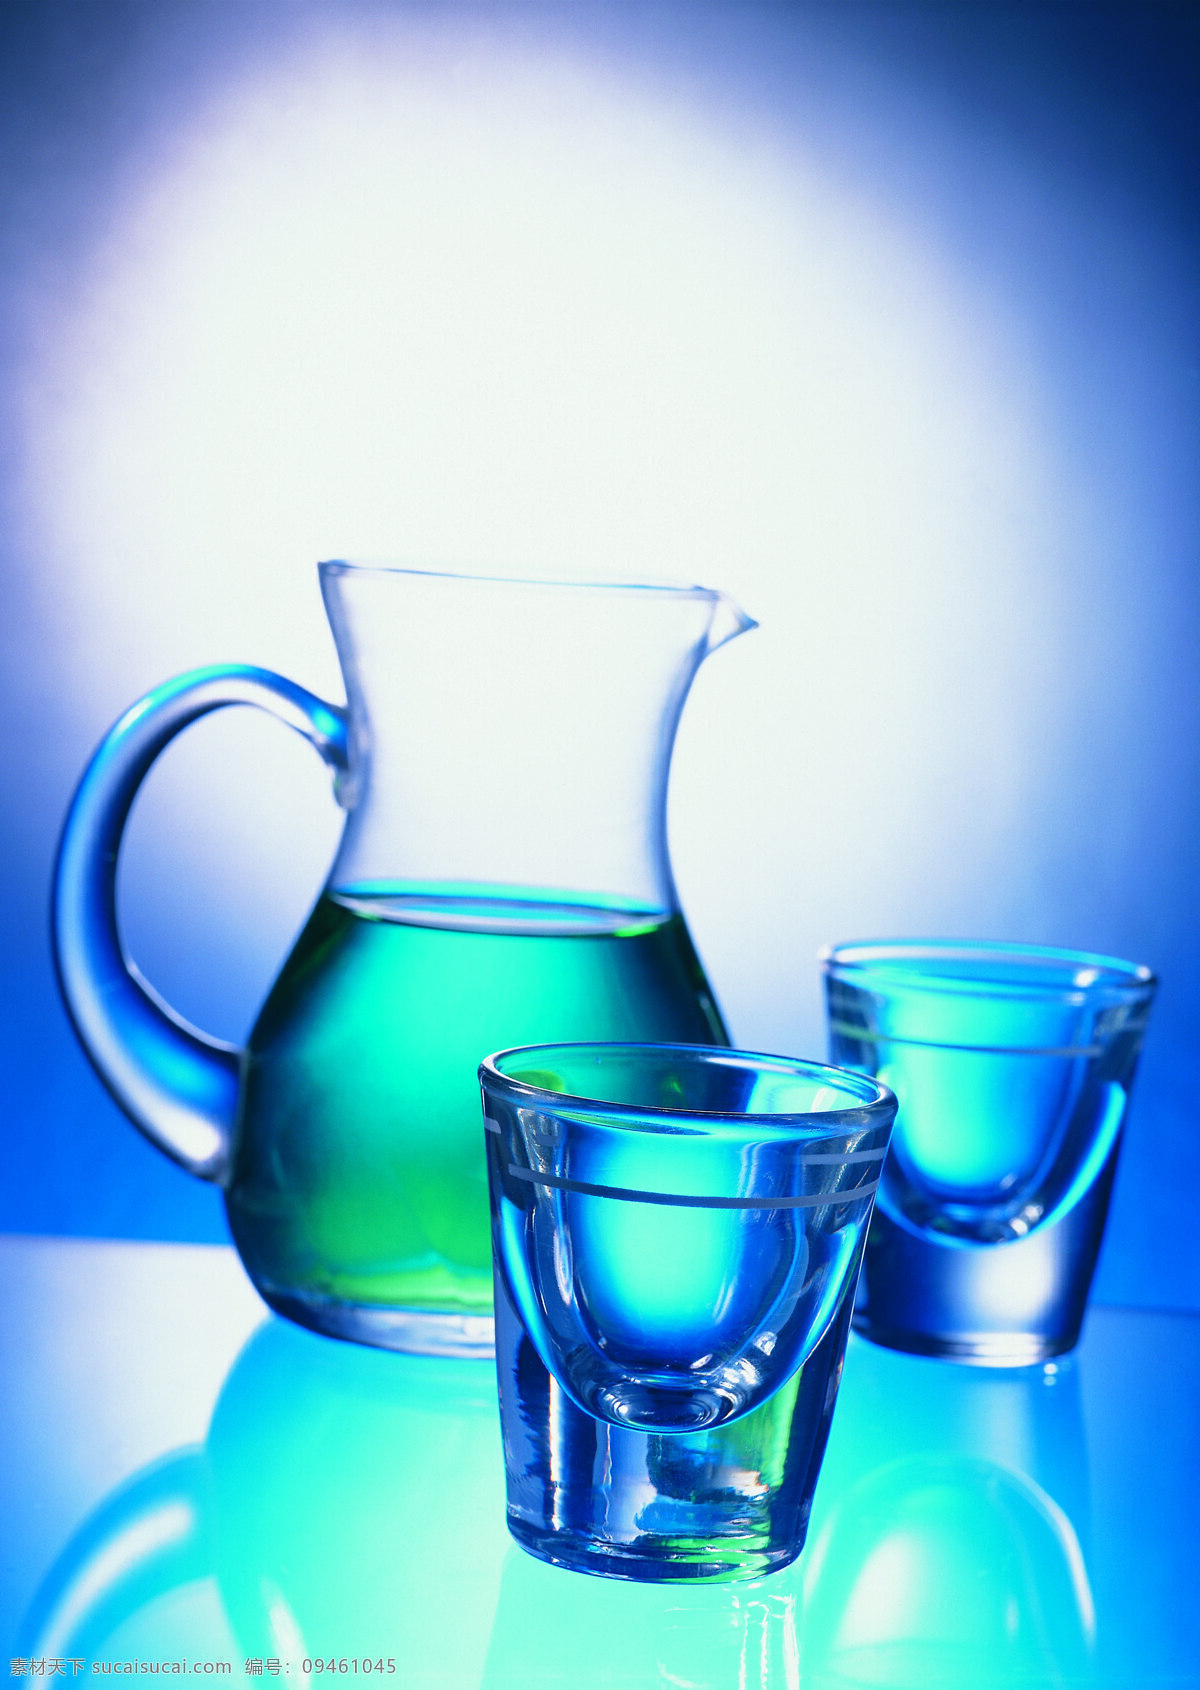 酒瓶 酒杯 酒水 饮料 清水 玻璃 透明 桌子 高清图片 酒类图片 餐饮美食